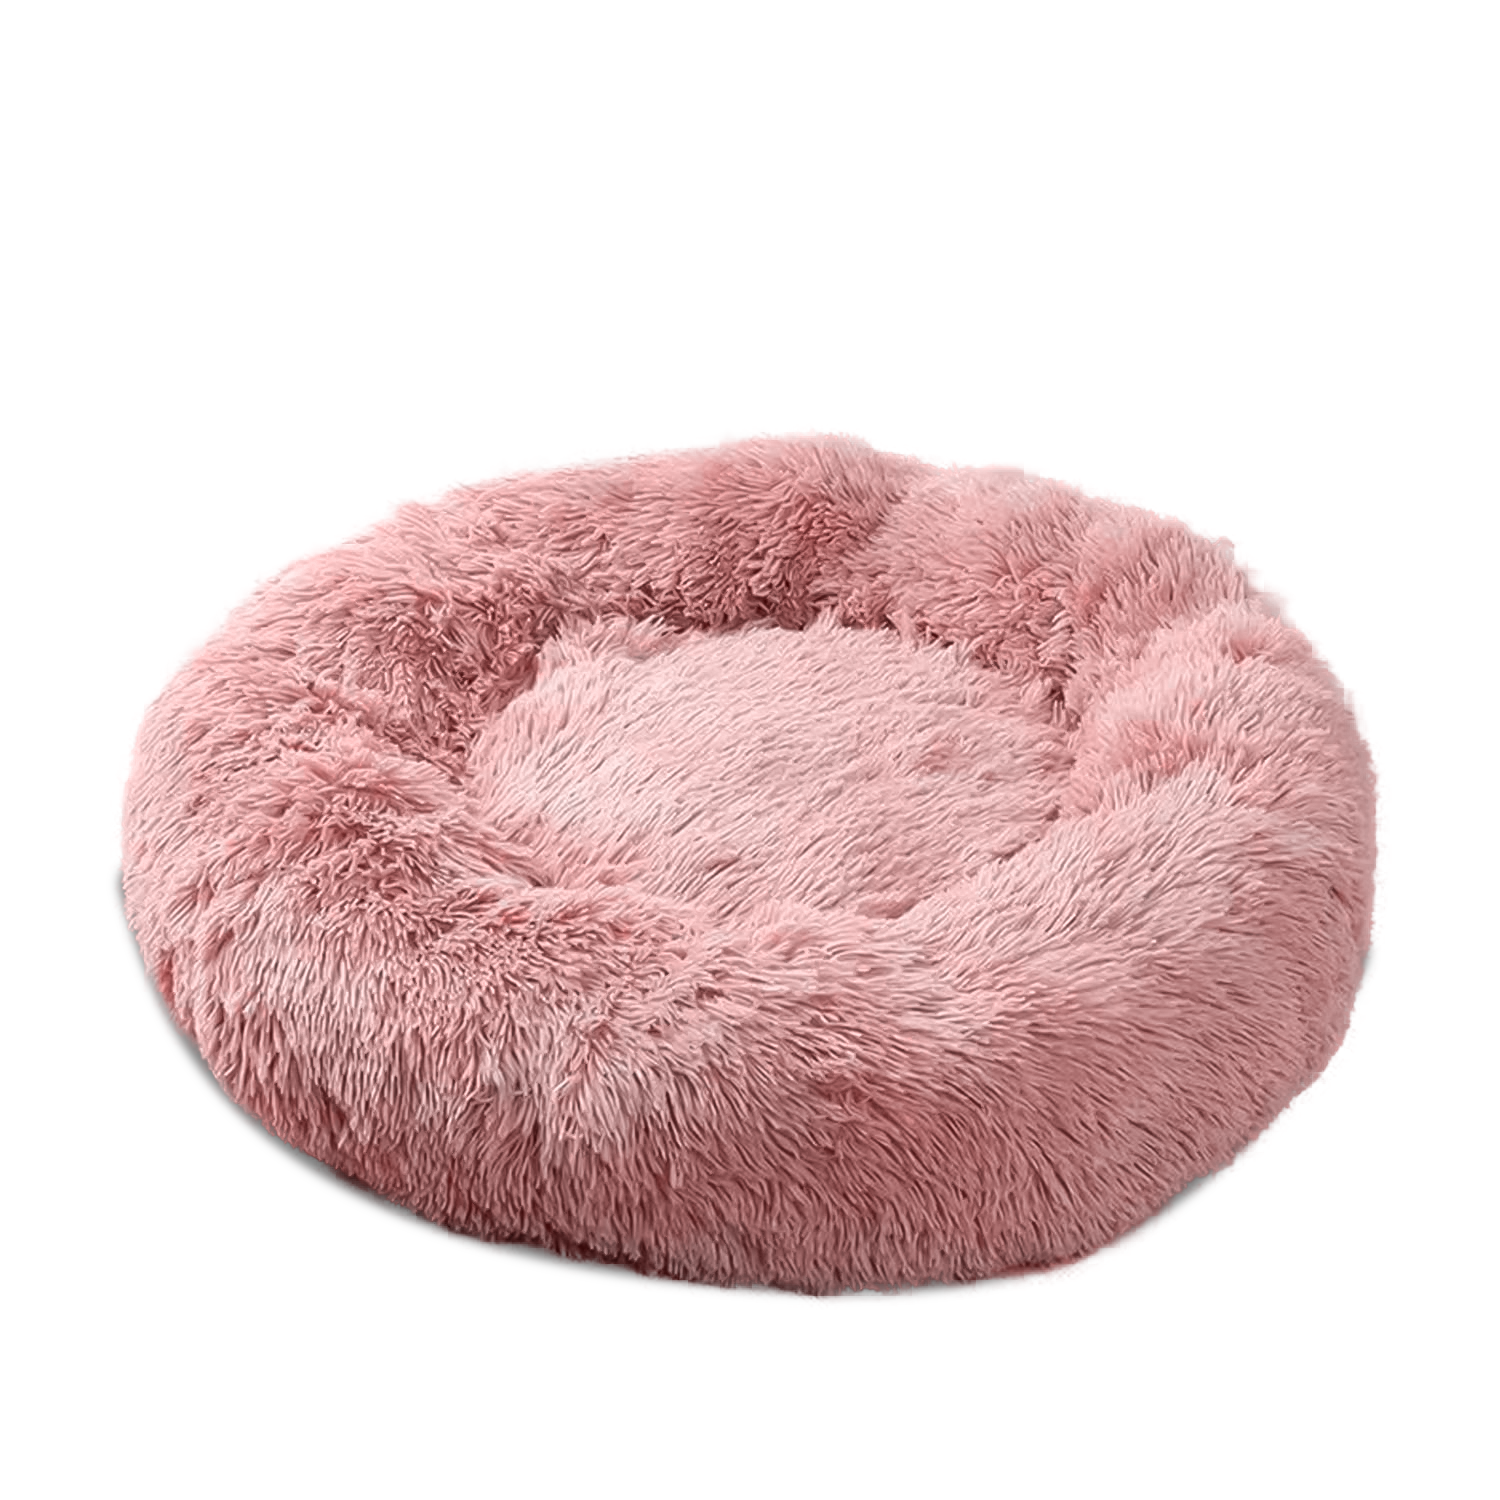 Лежак для животных ZooM розовый №2 Cloud, 65*65*19 см